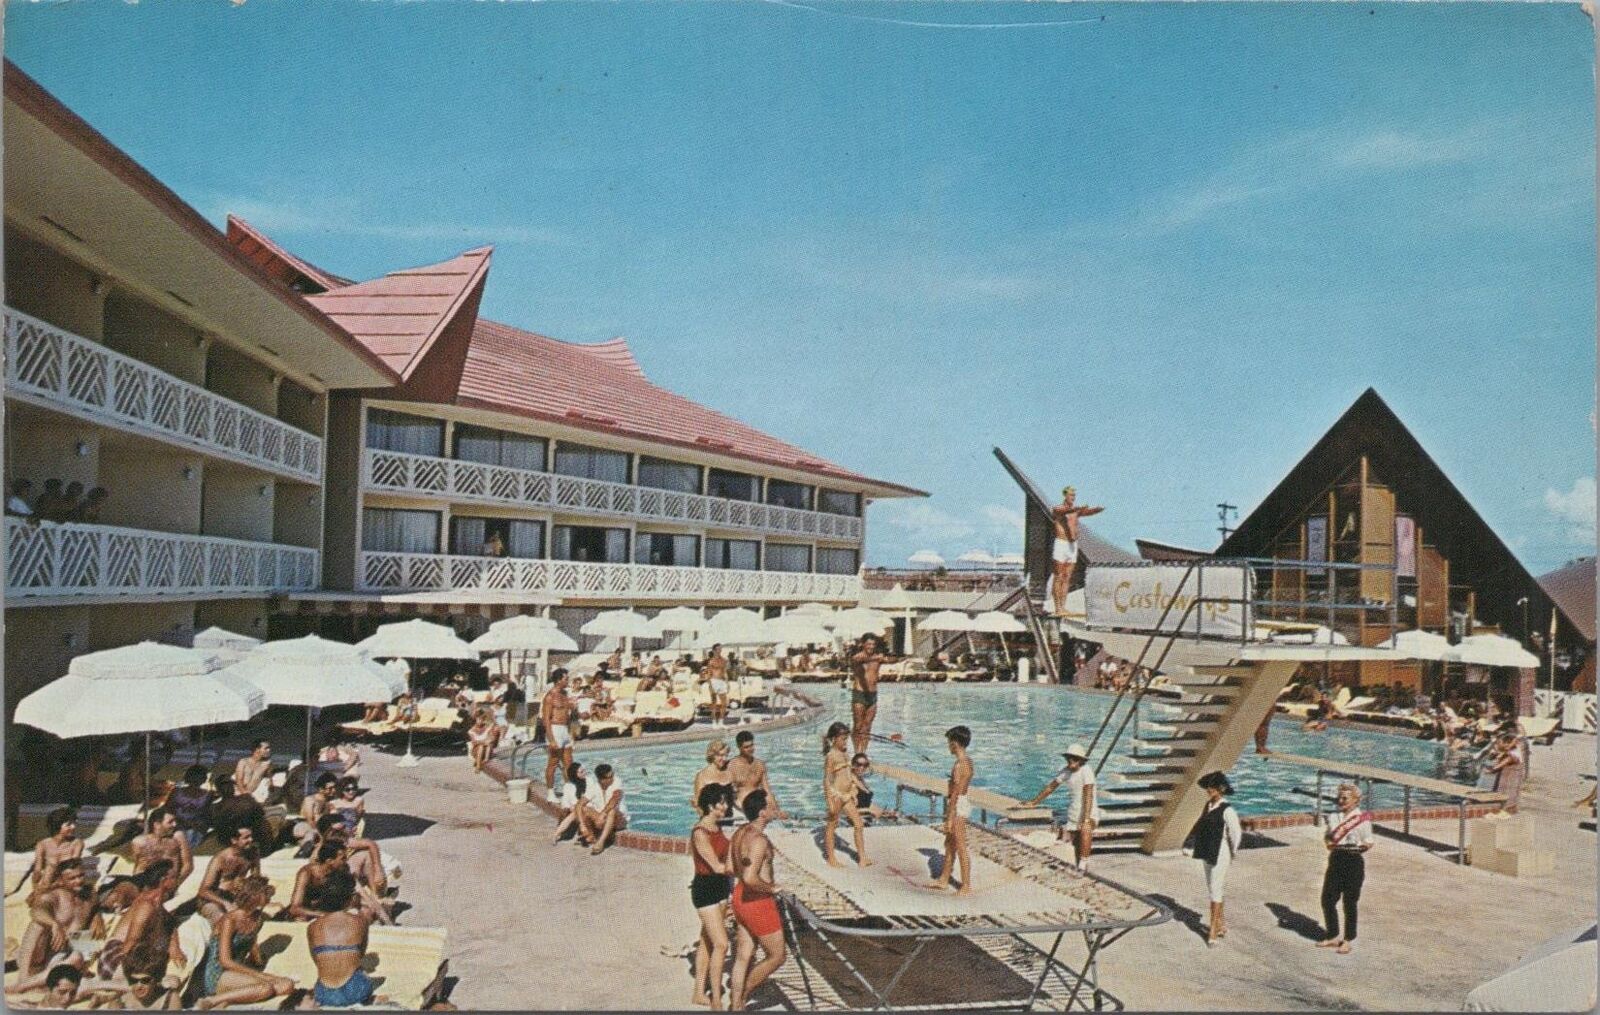 Postcard The Castaways Miami Beach FL 1963 Swimming Pool 